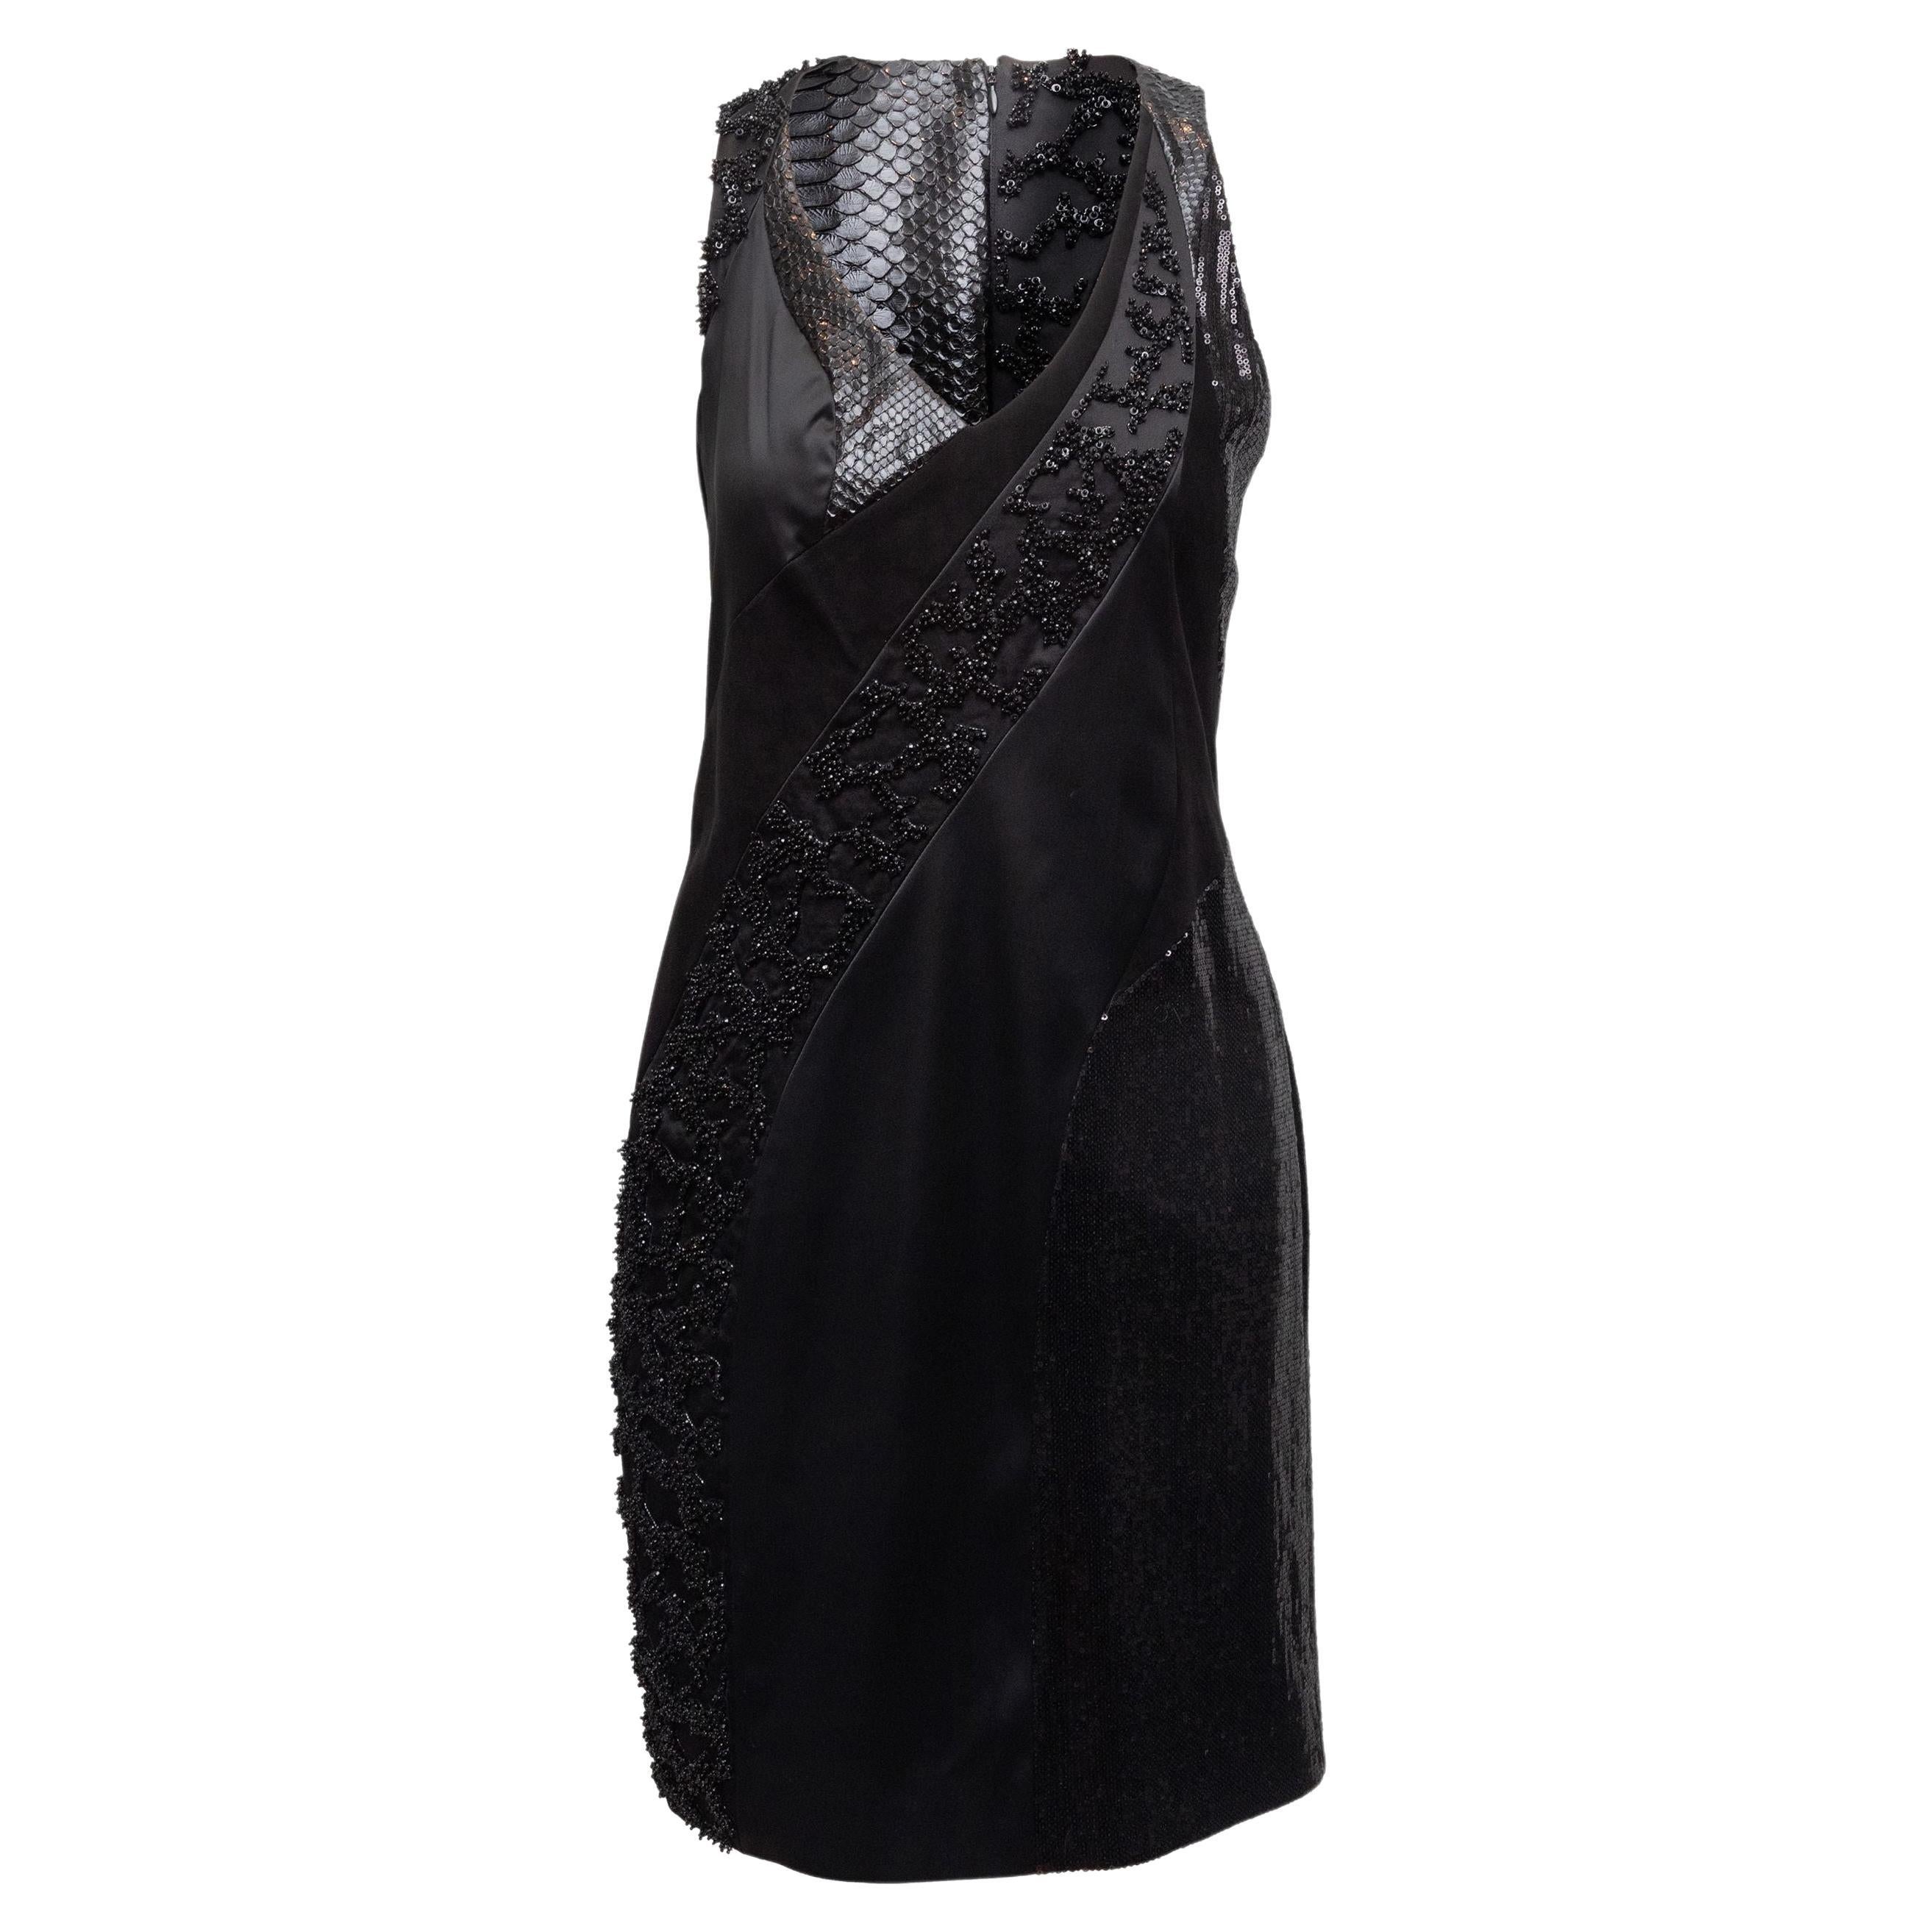 Rubin Singer Black Embellished Sleeveless Dress